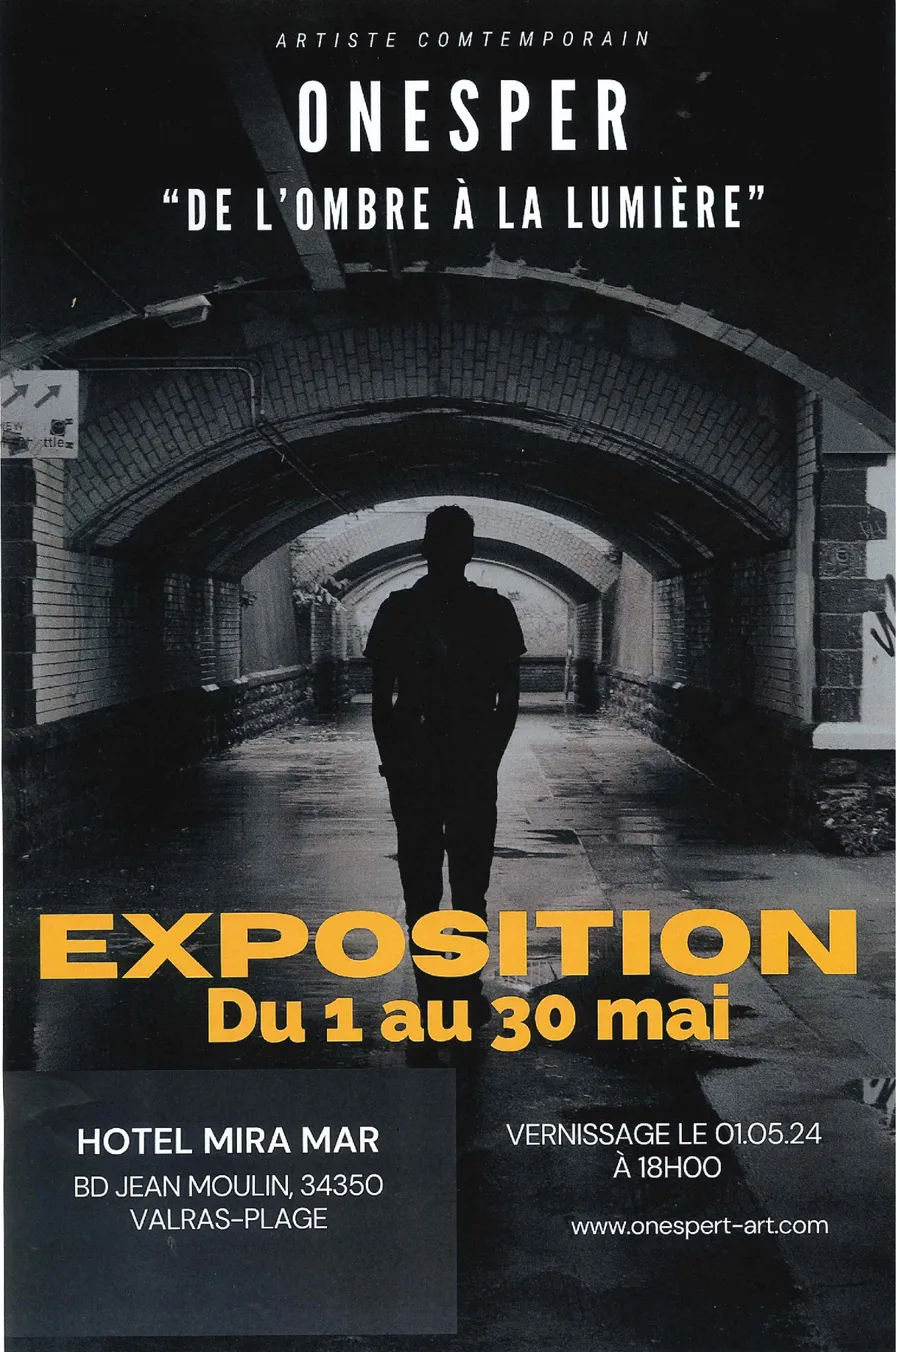 Image du carousel qui illustre: Exposition Hôtel Mira-mar- Onesper " De L'ombre À La Lumière" à Valras-Plage